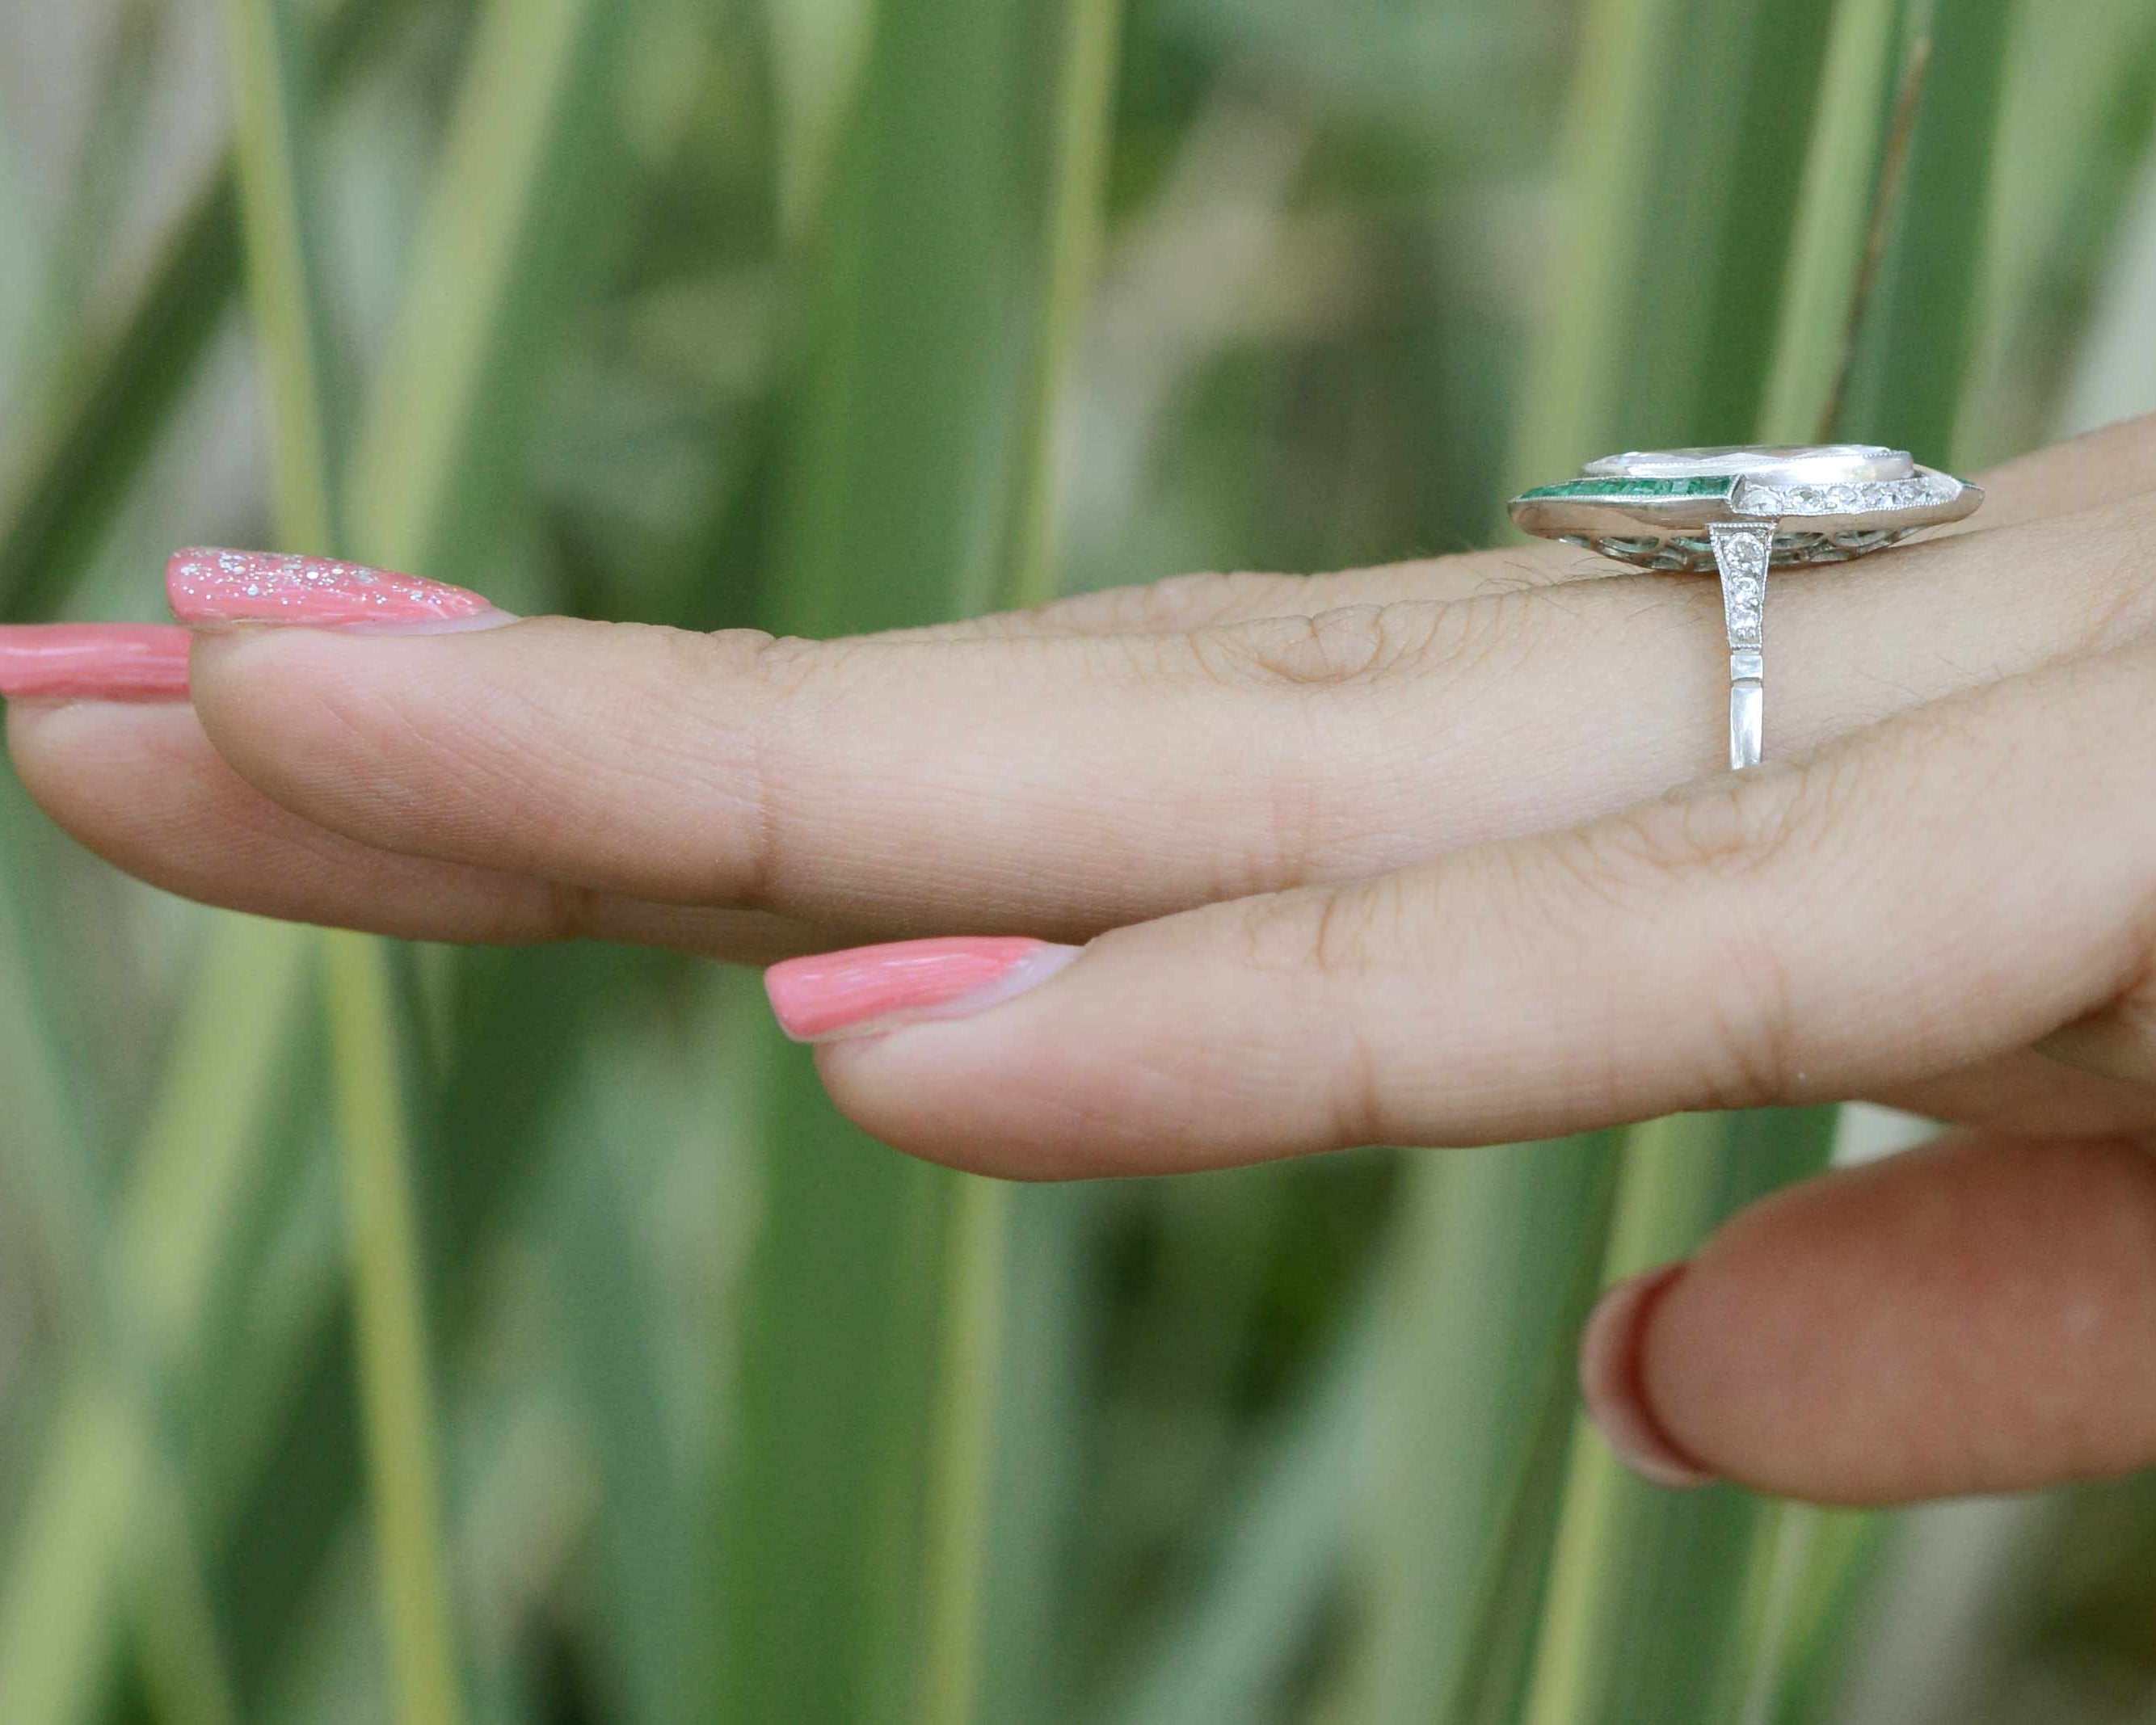 A unique diamond and emerald platinum engagement ring.